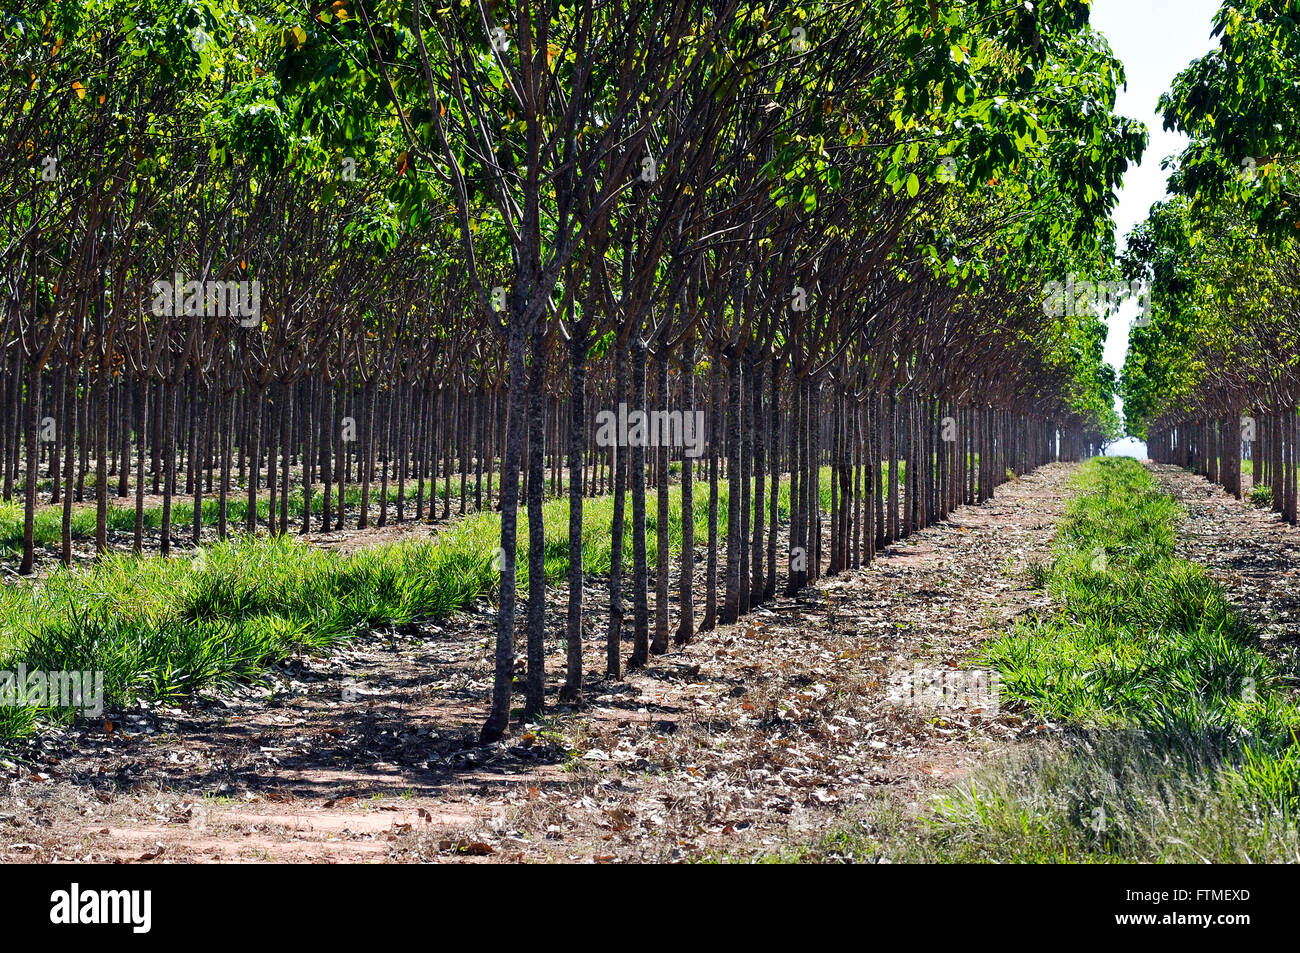 Ha les hévéas plantés trois ans - la production de caoutchouc naturel complexe Banque D'Images